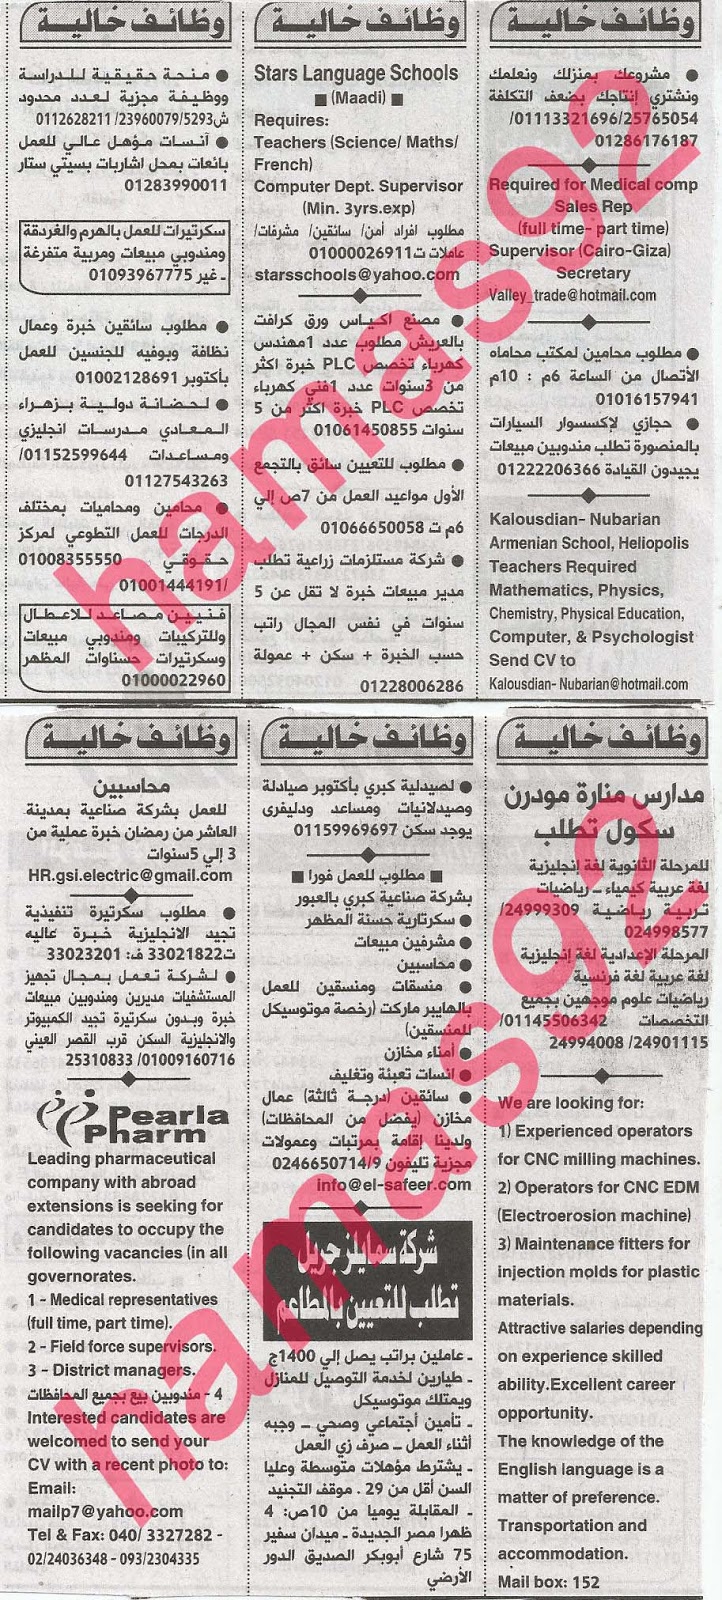 وظائف خالية فى جريدة الاهرام الجمعة 16-08-2013 7